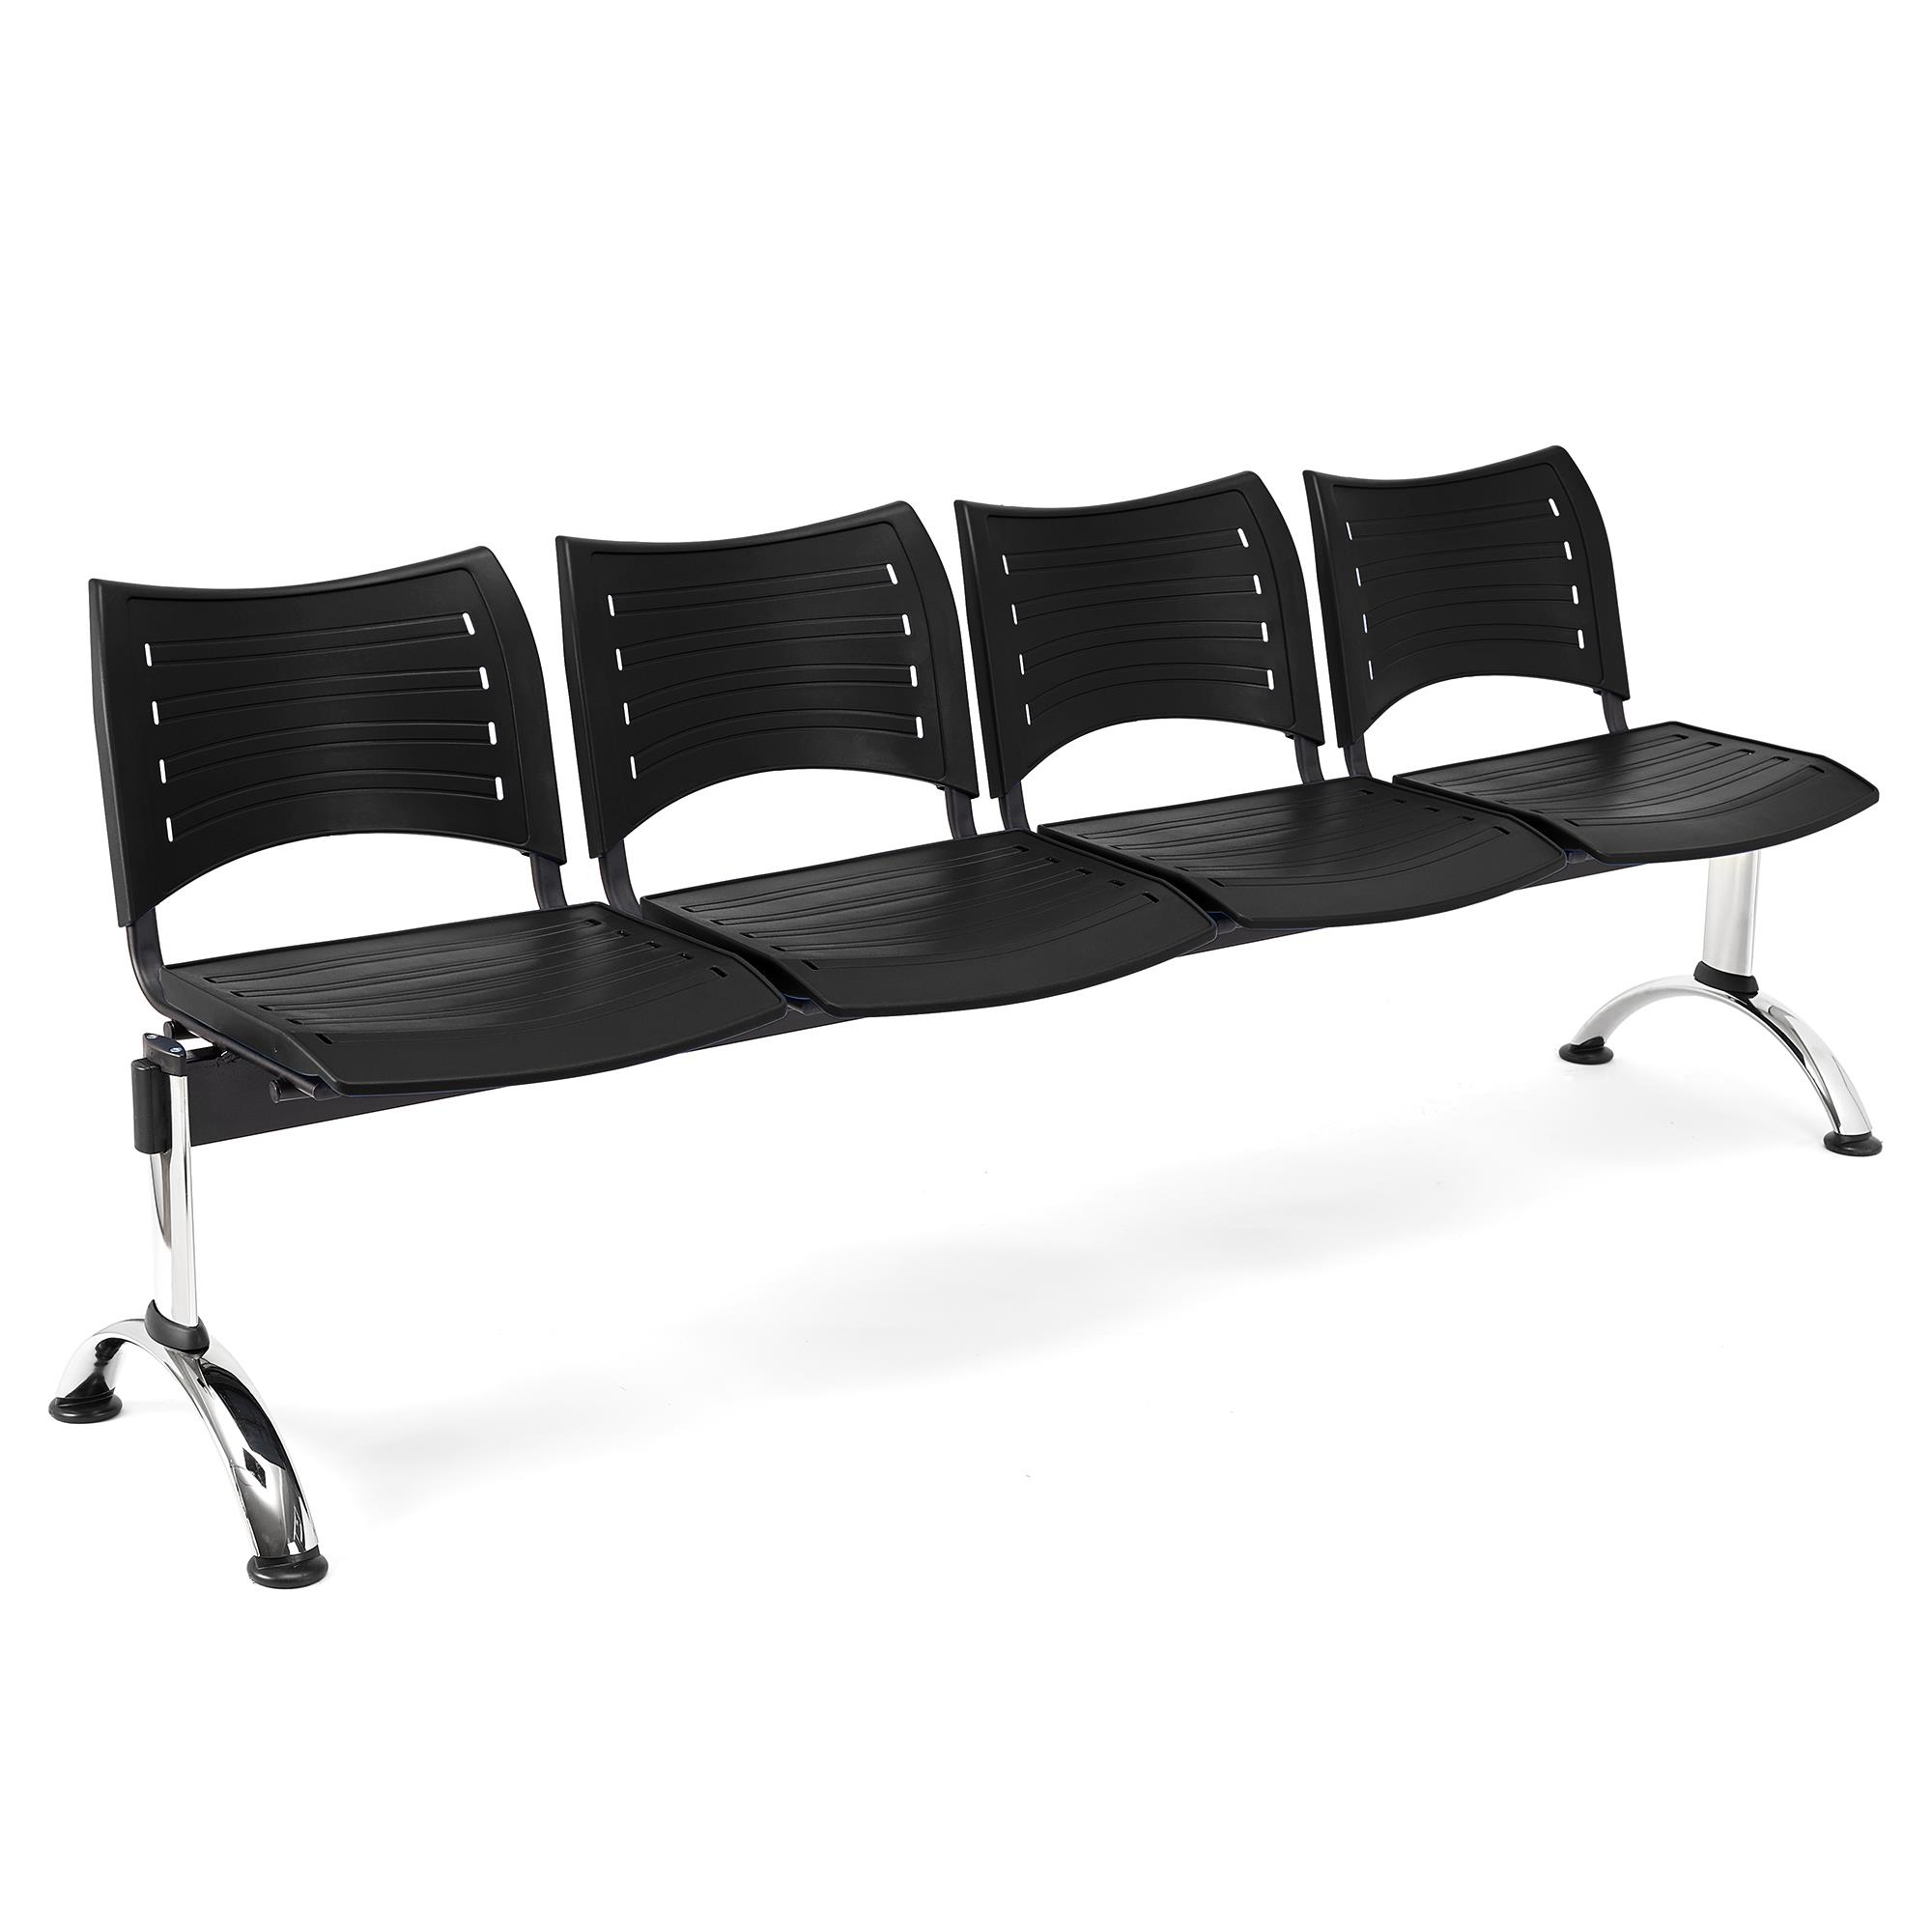 Wartebank ELVA 4-Sitzer, Metallgestell, Kunststoff, Farbe Schwarz